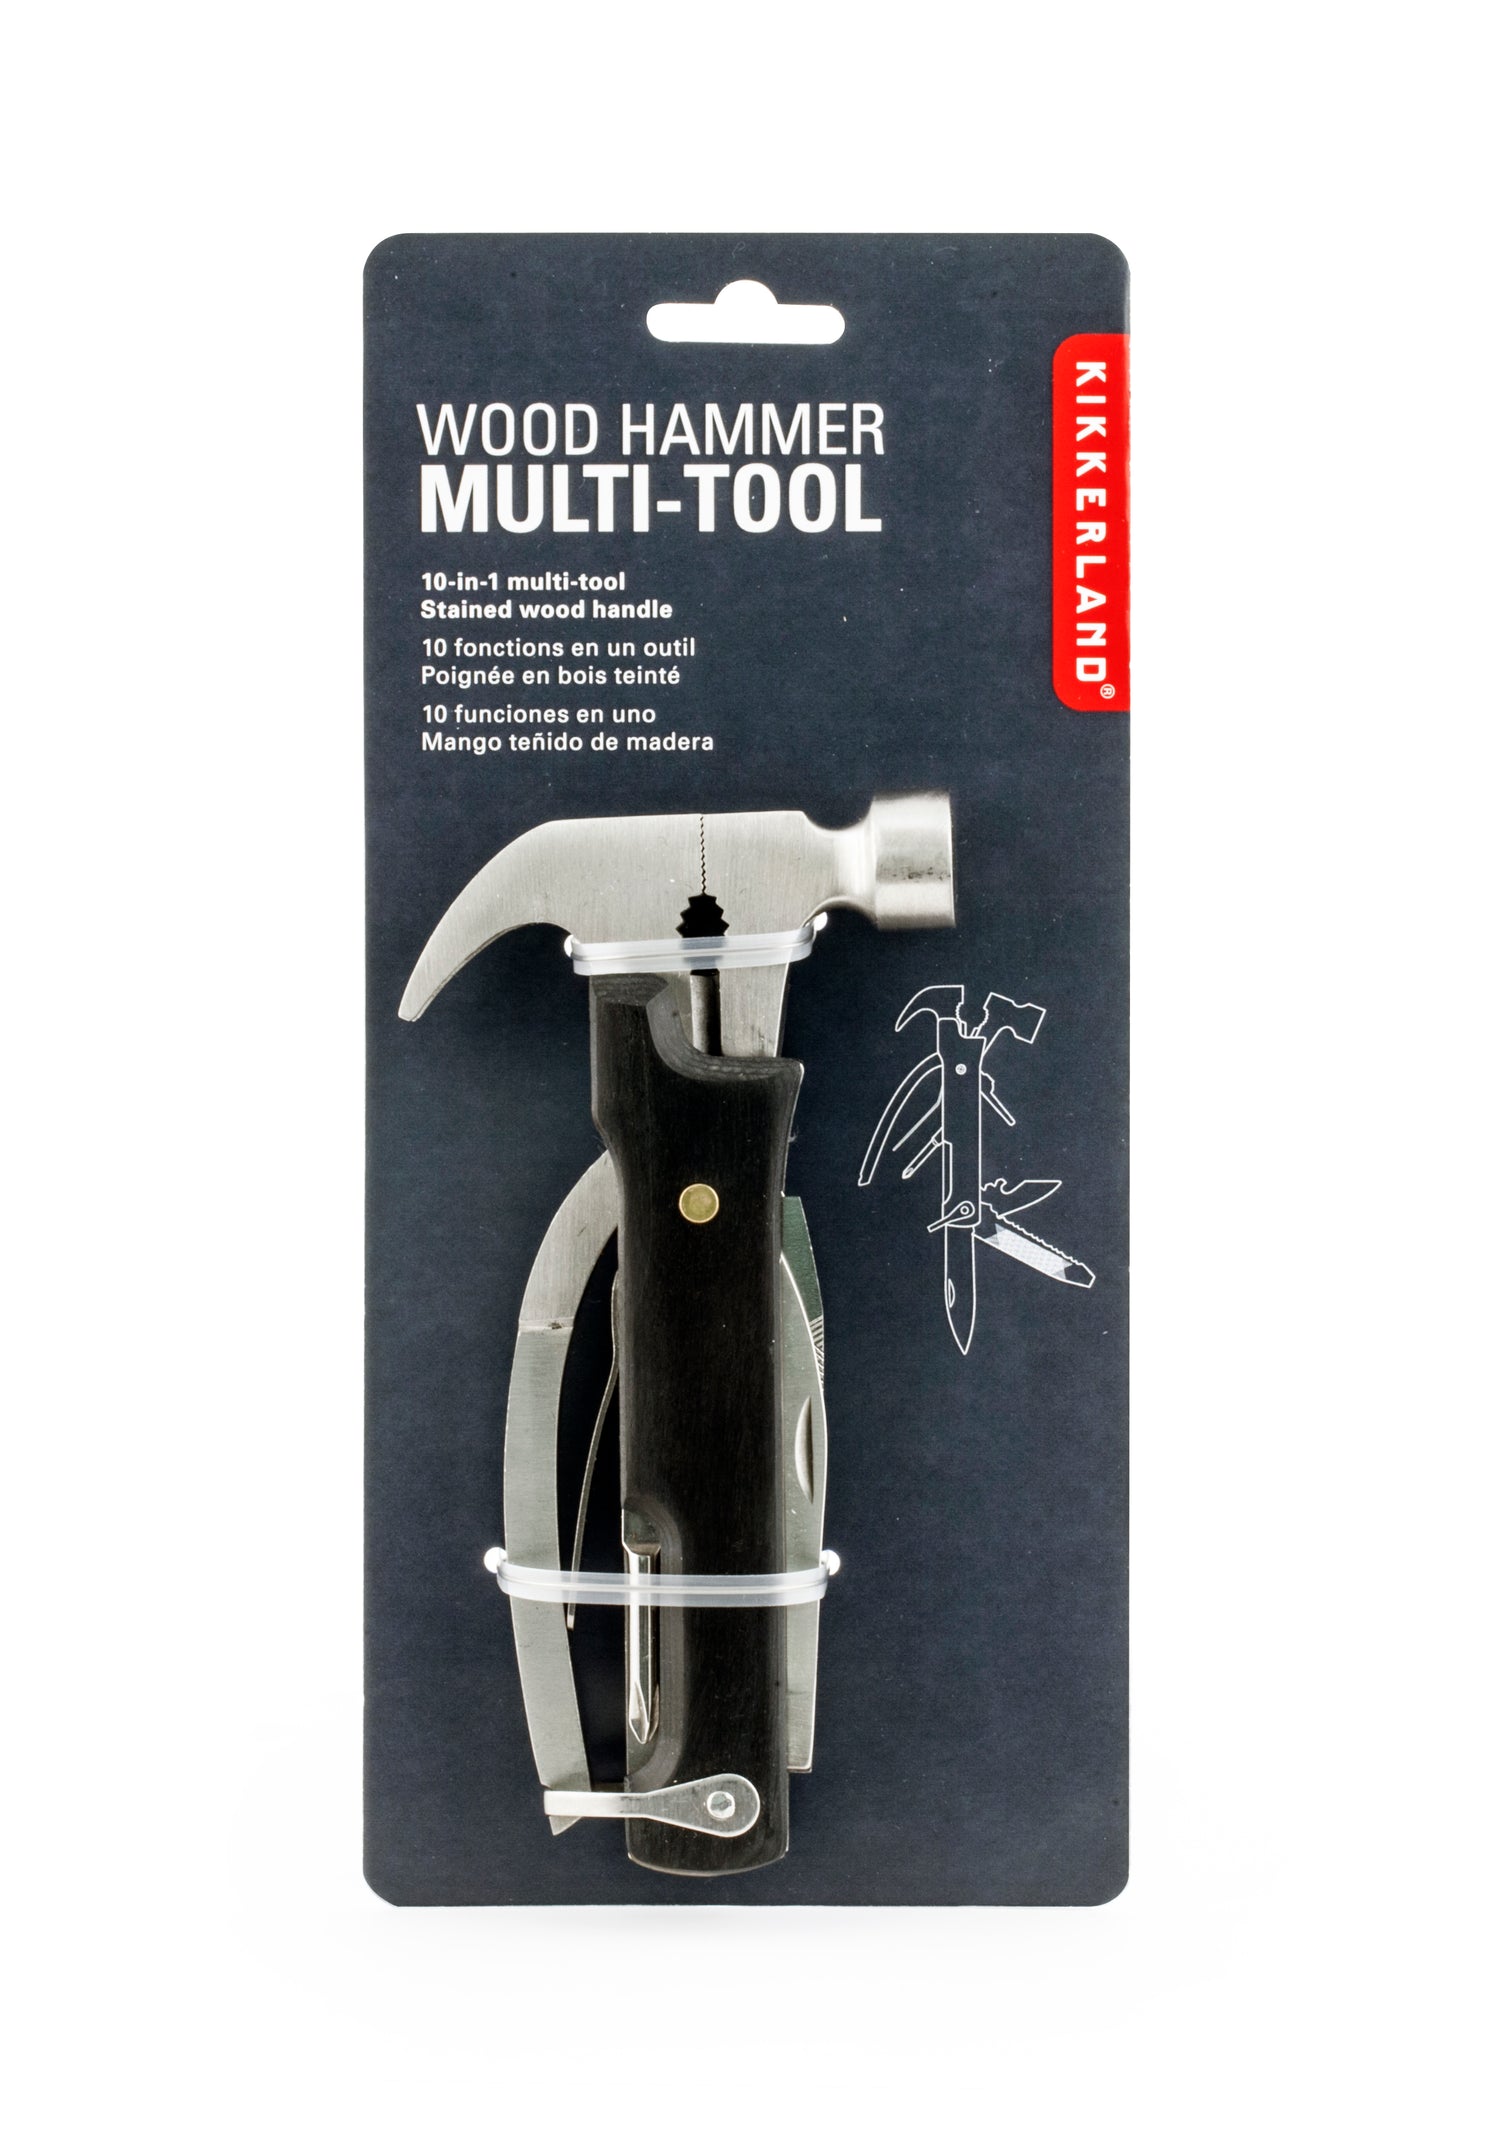 Wood Hammer Multi-tool